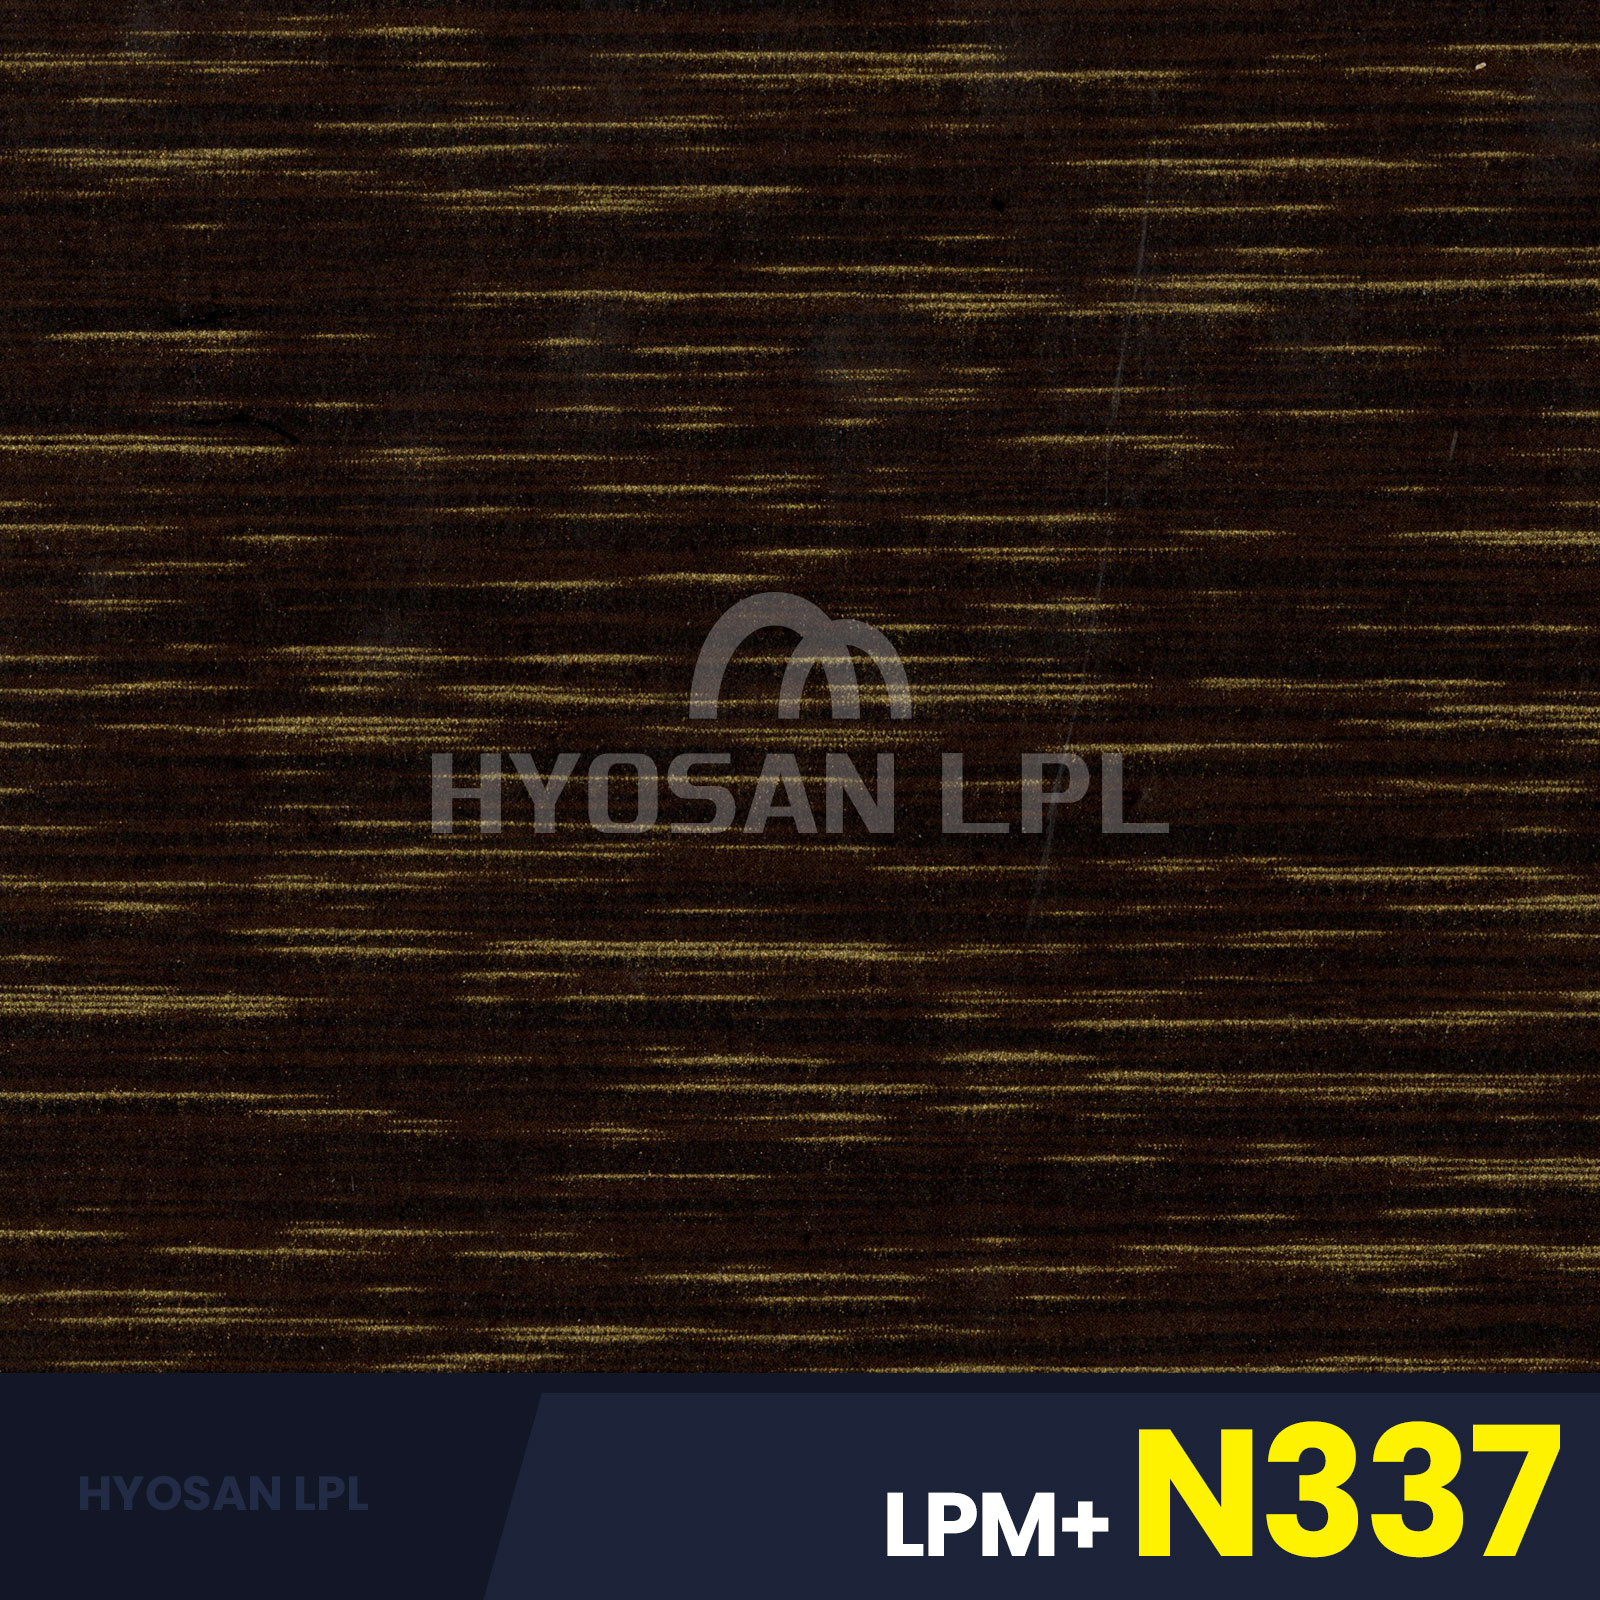 LPM+N337